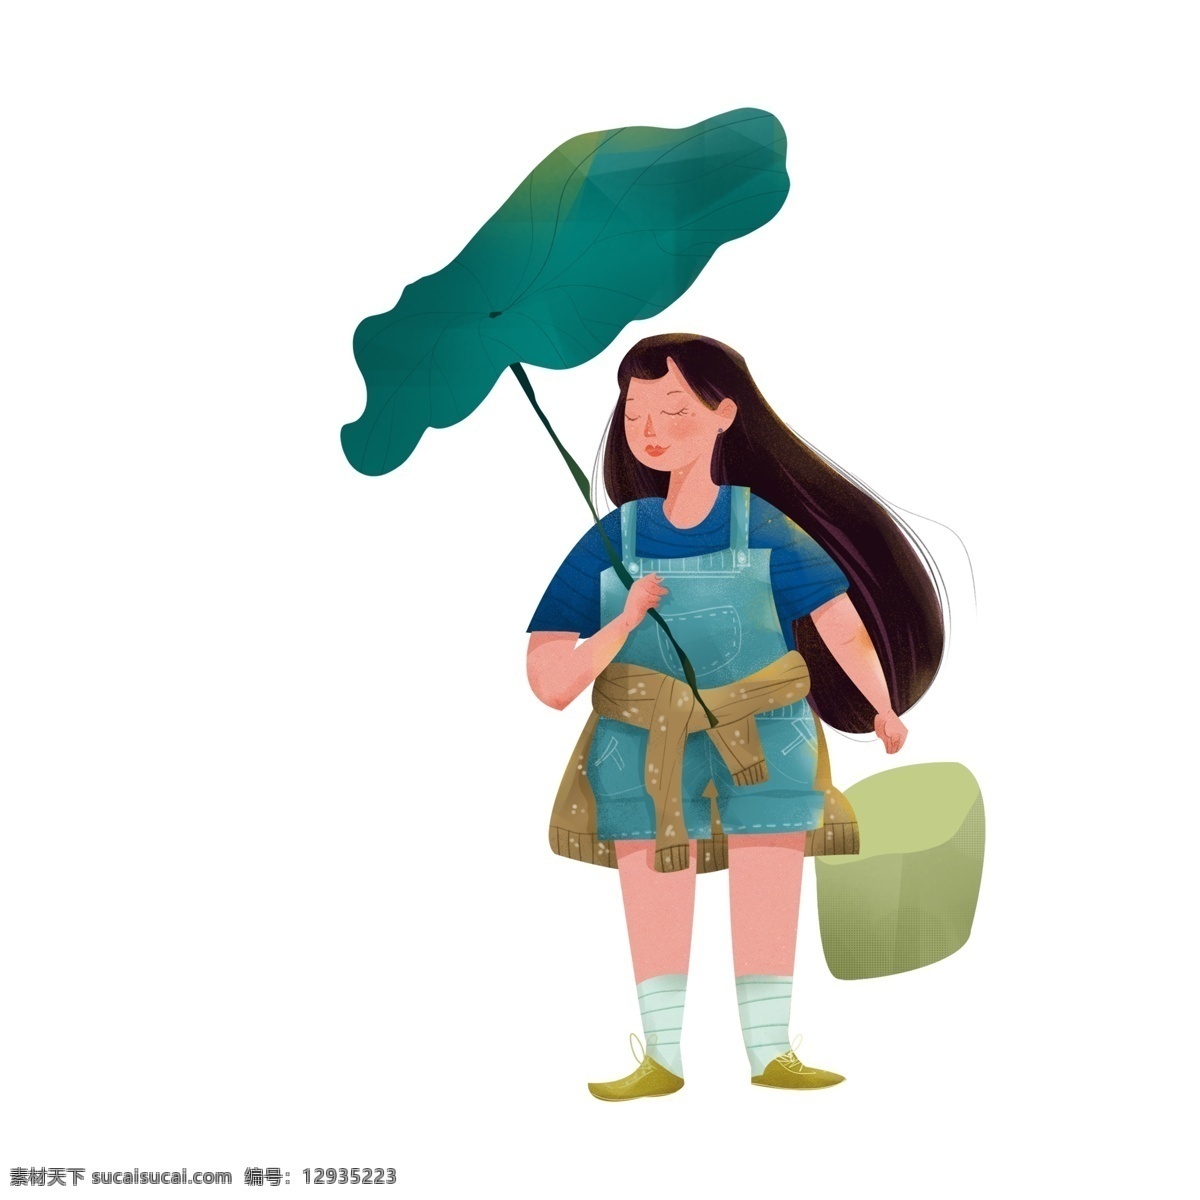 清新 可爱 撑 荷叶 伞 女孩 绿色 卡通 手绘 女生 人物设计